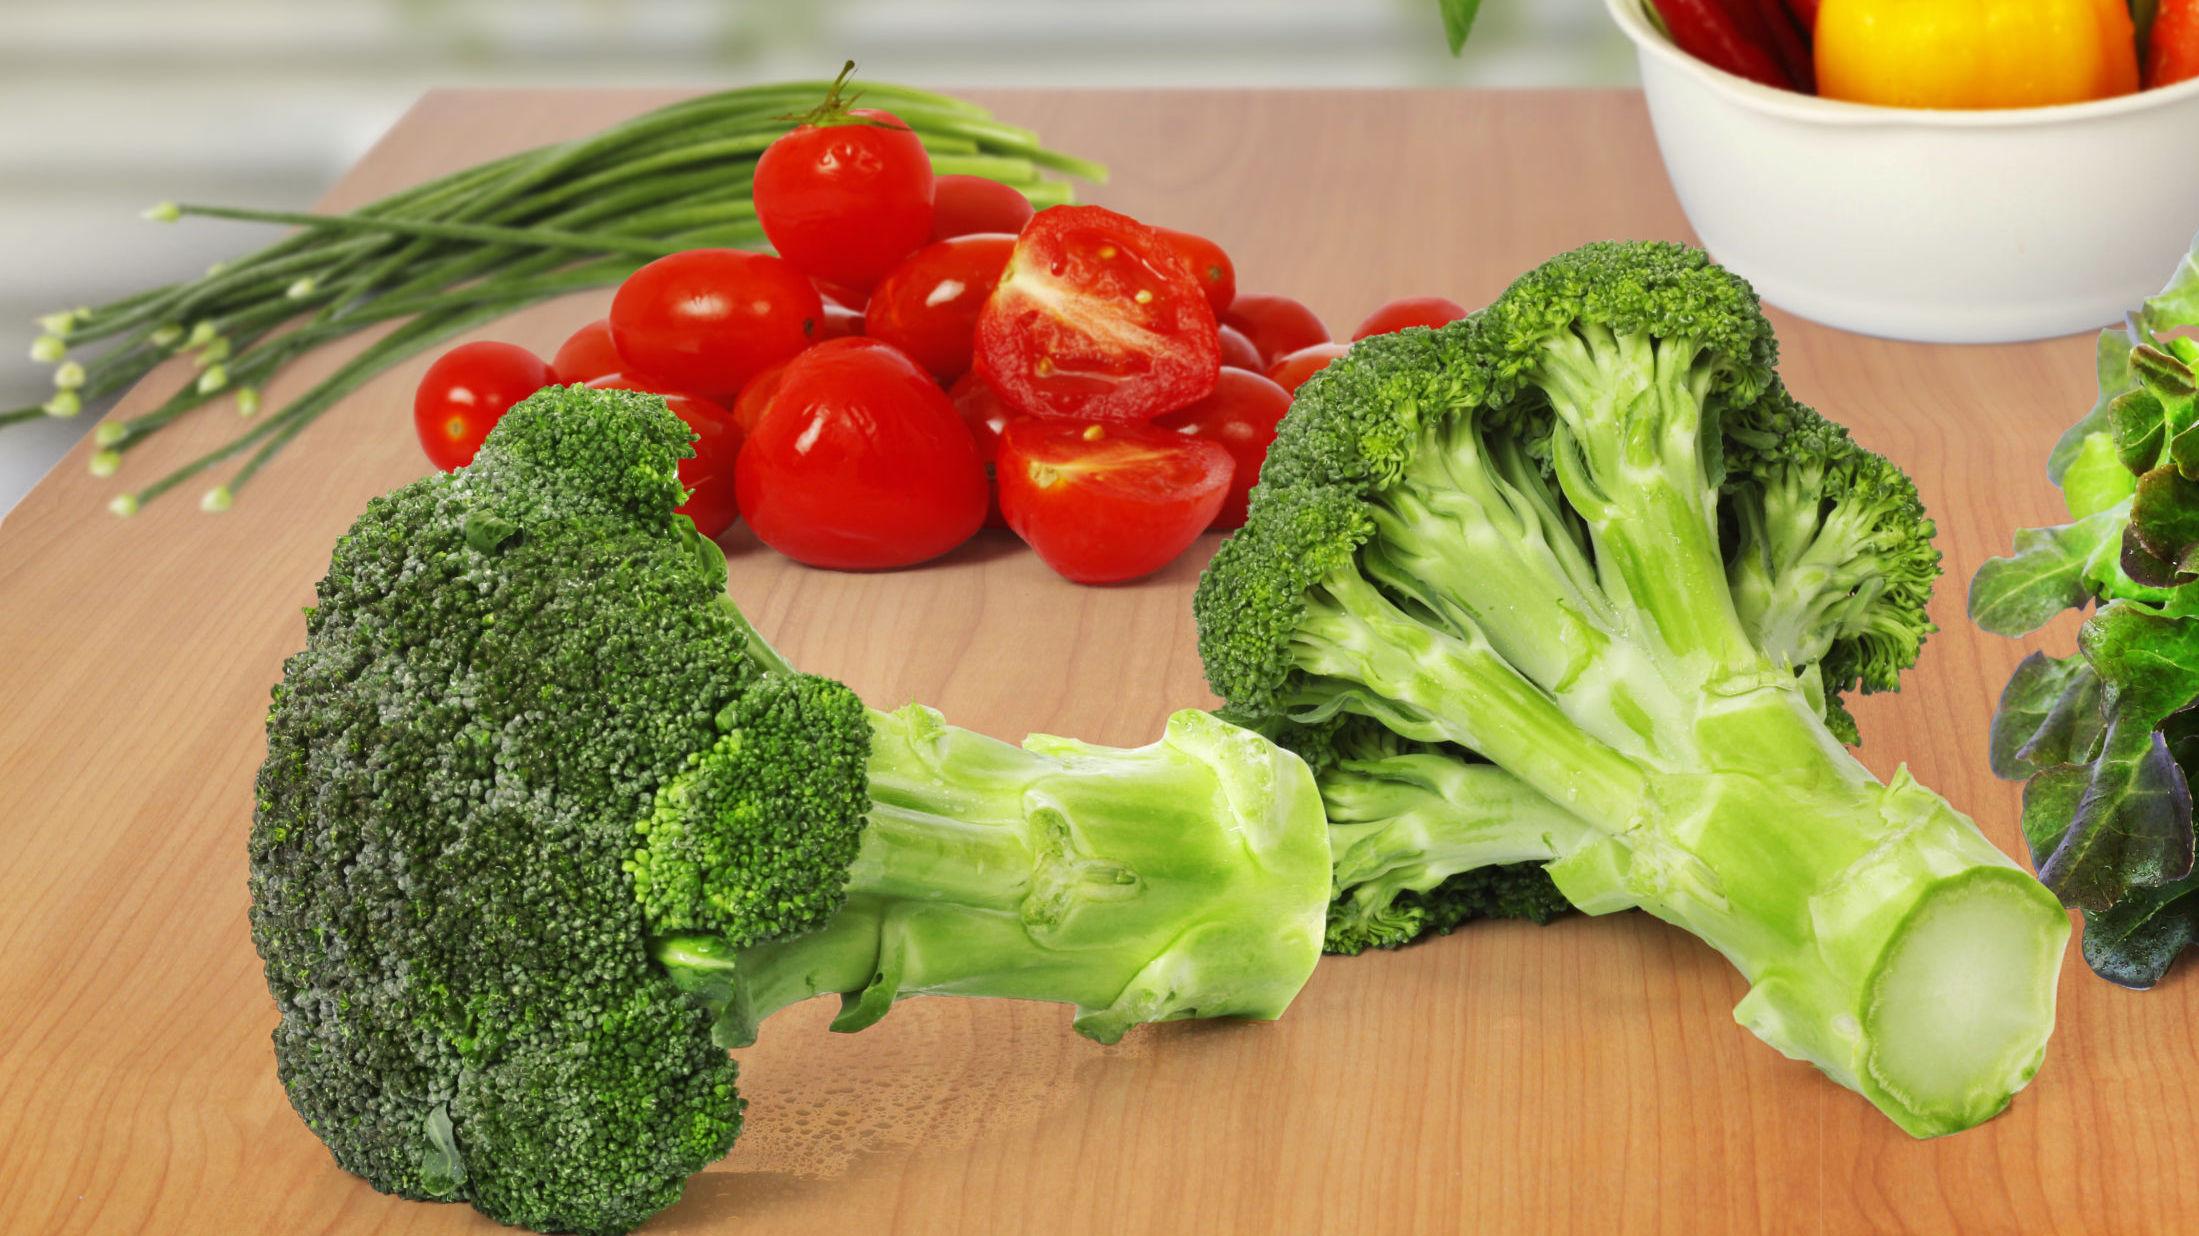 BRUK HELE: Det er ikke bare bukettene av brokkolien du kan bruke til matlaging. Foto: Shutterstock / NTB scanpix